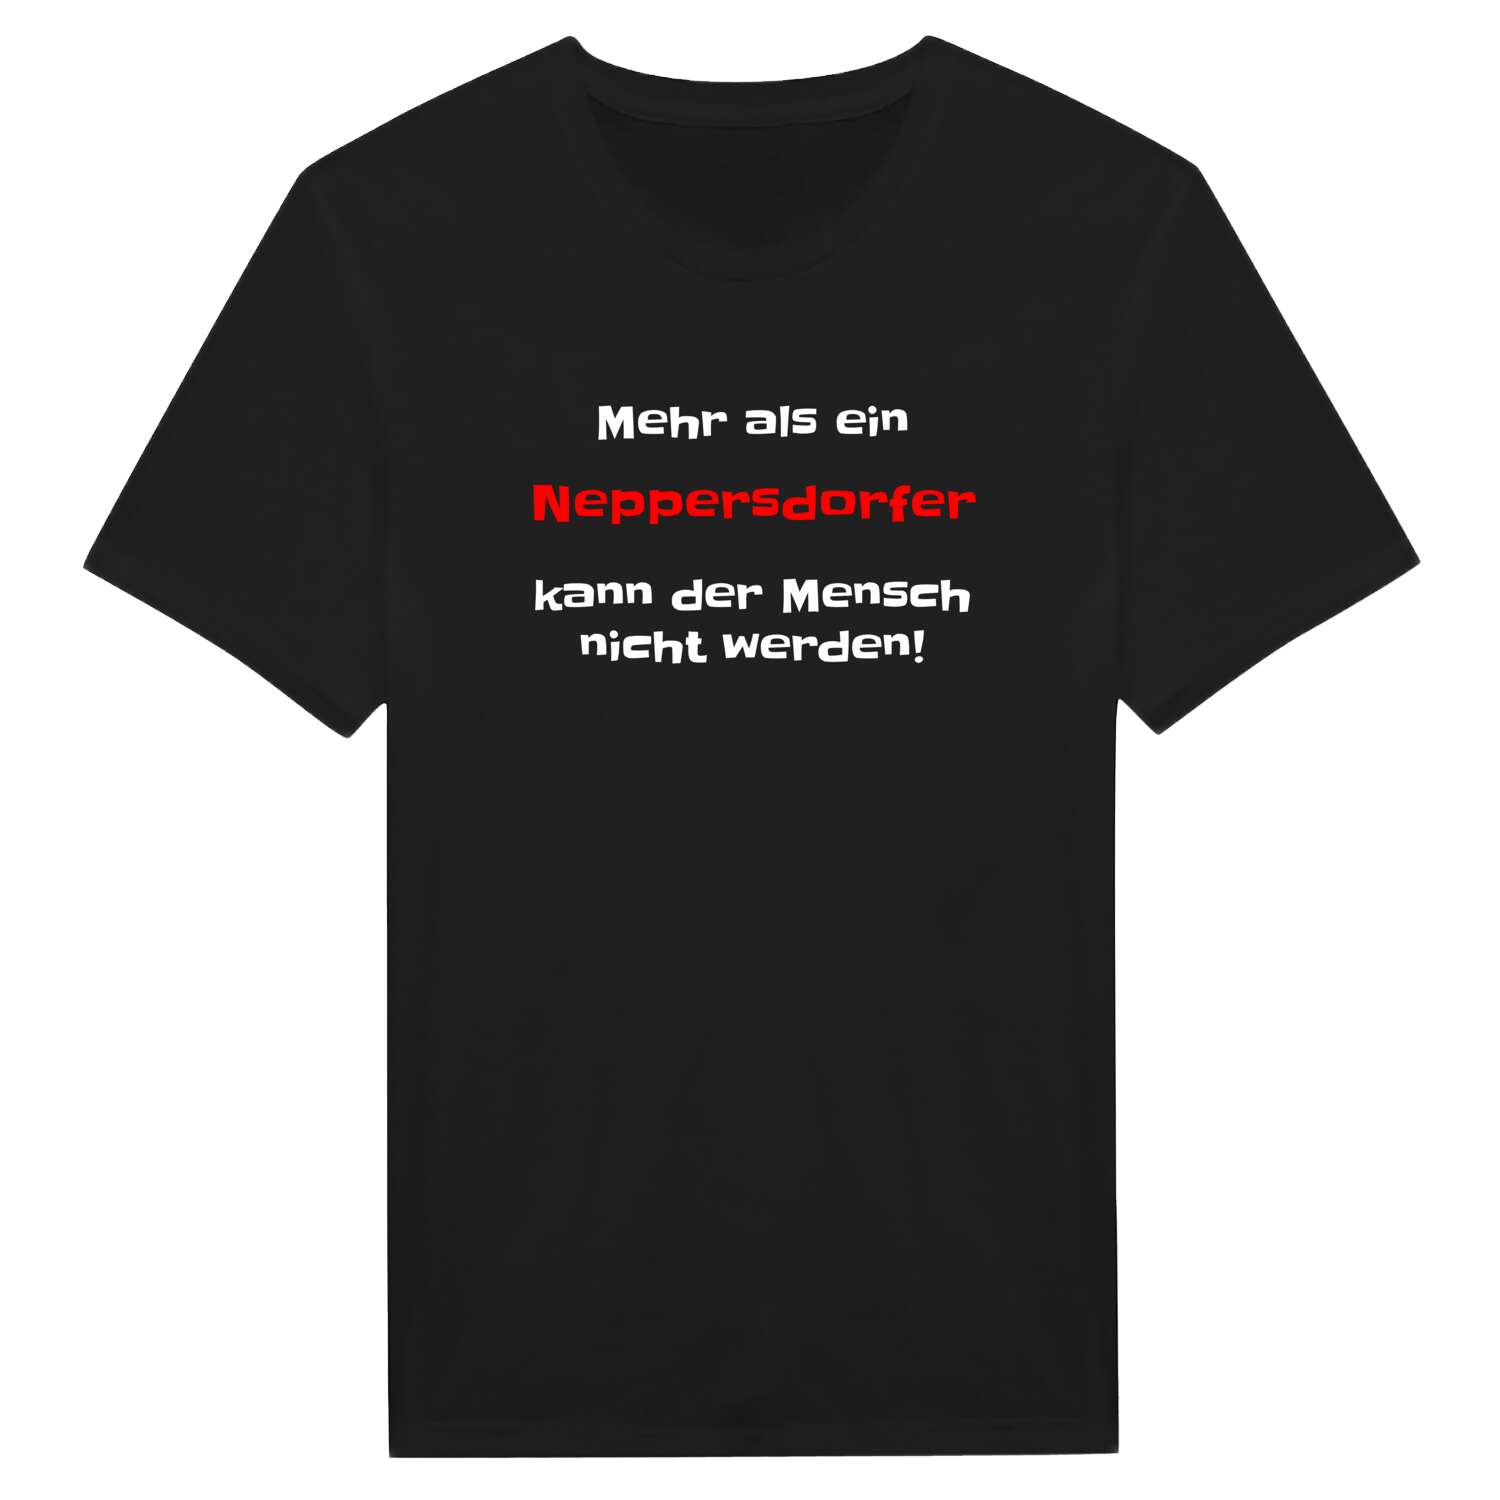 Neppersdorf T-Shirt »Mehr als ein«